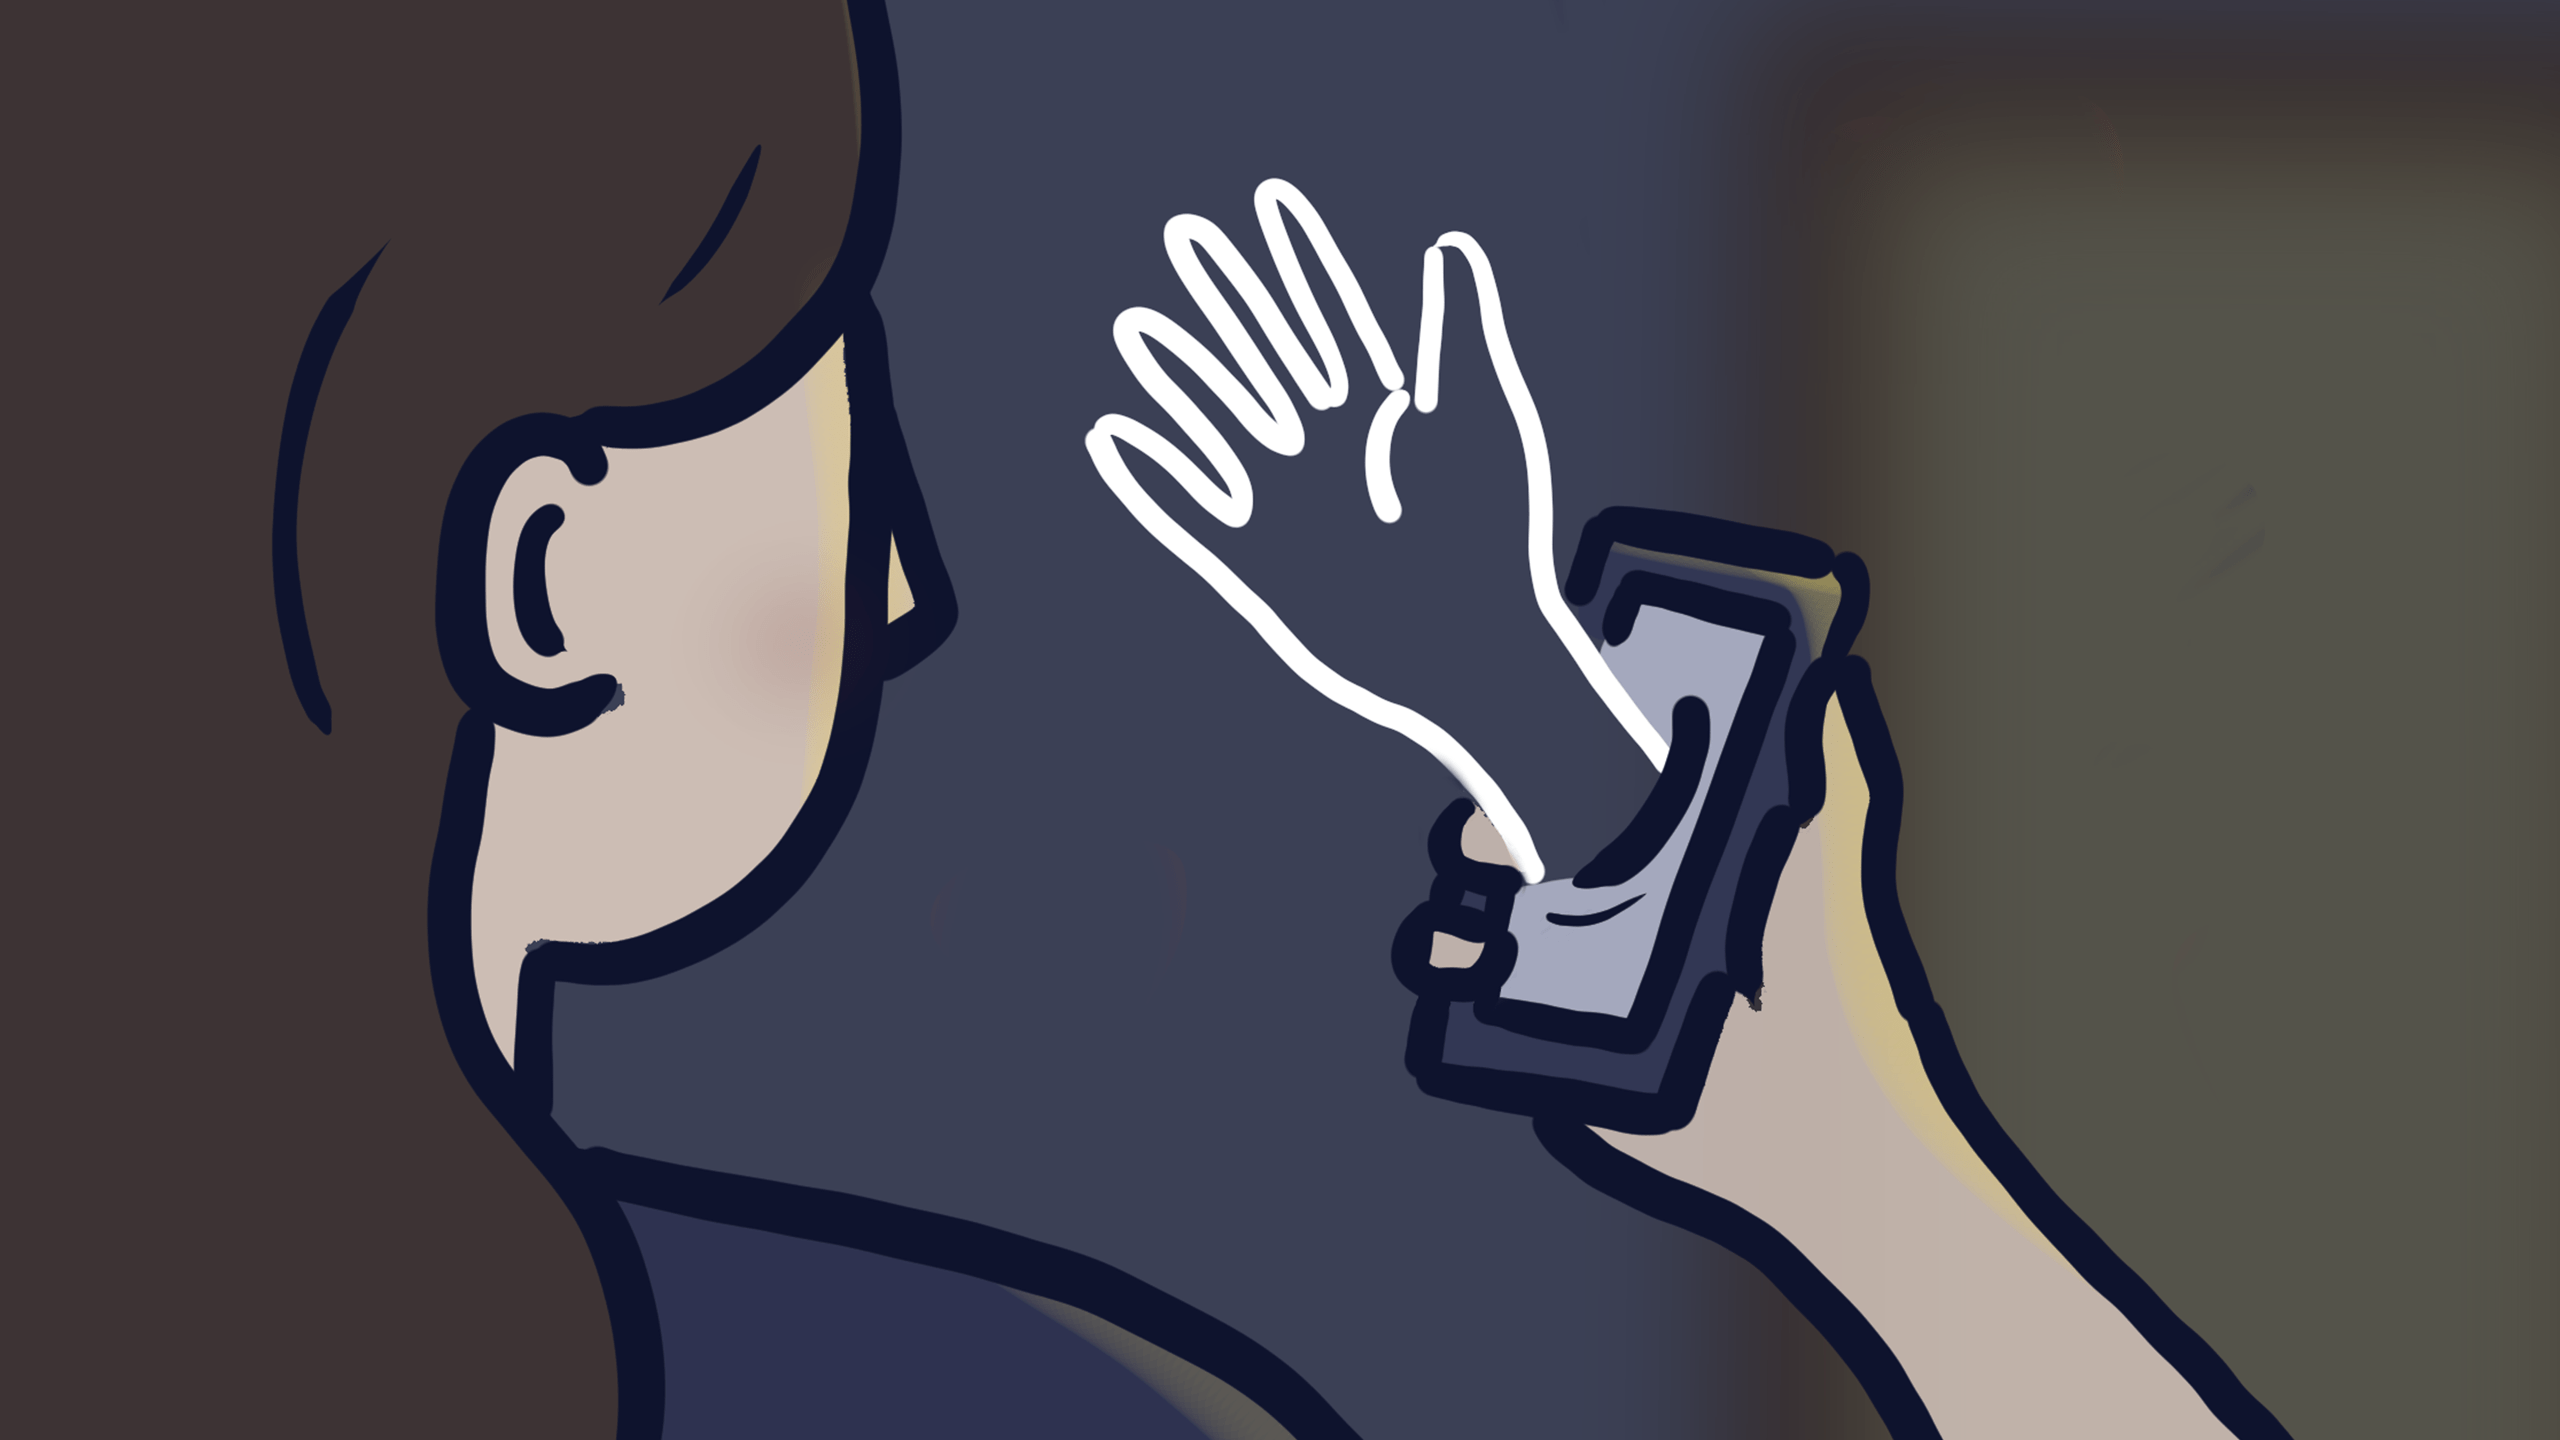 A person looking at their cellphone in a dark room as a phantom hand reaches through the screen.